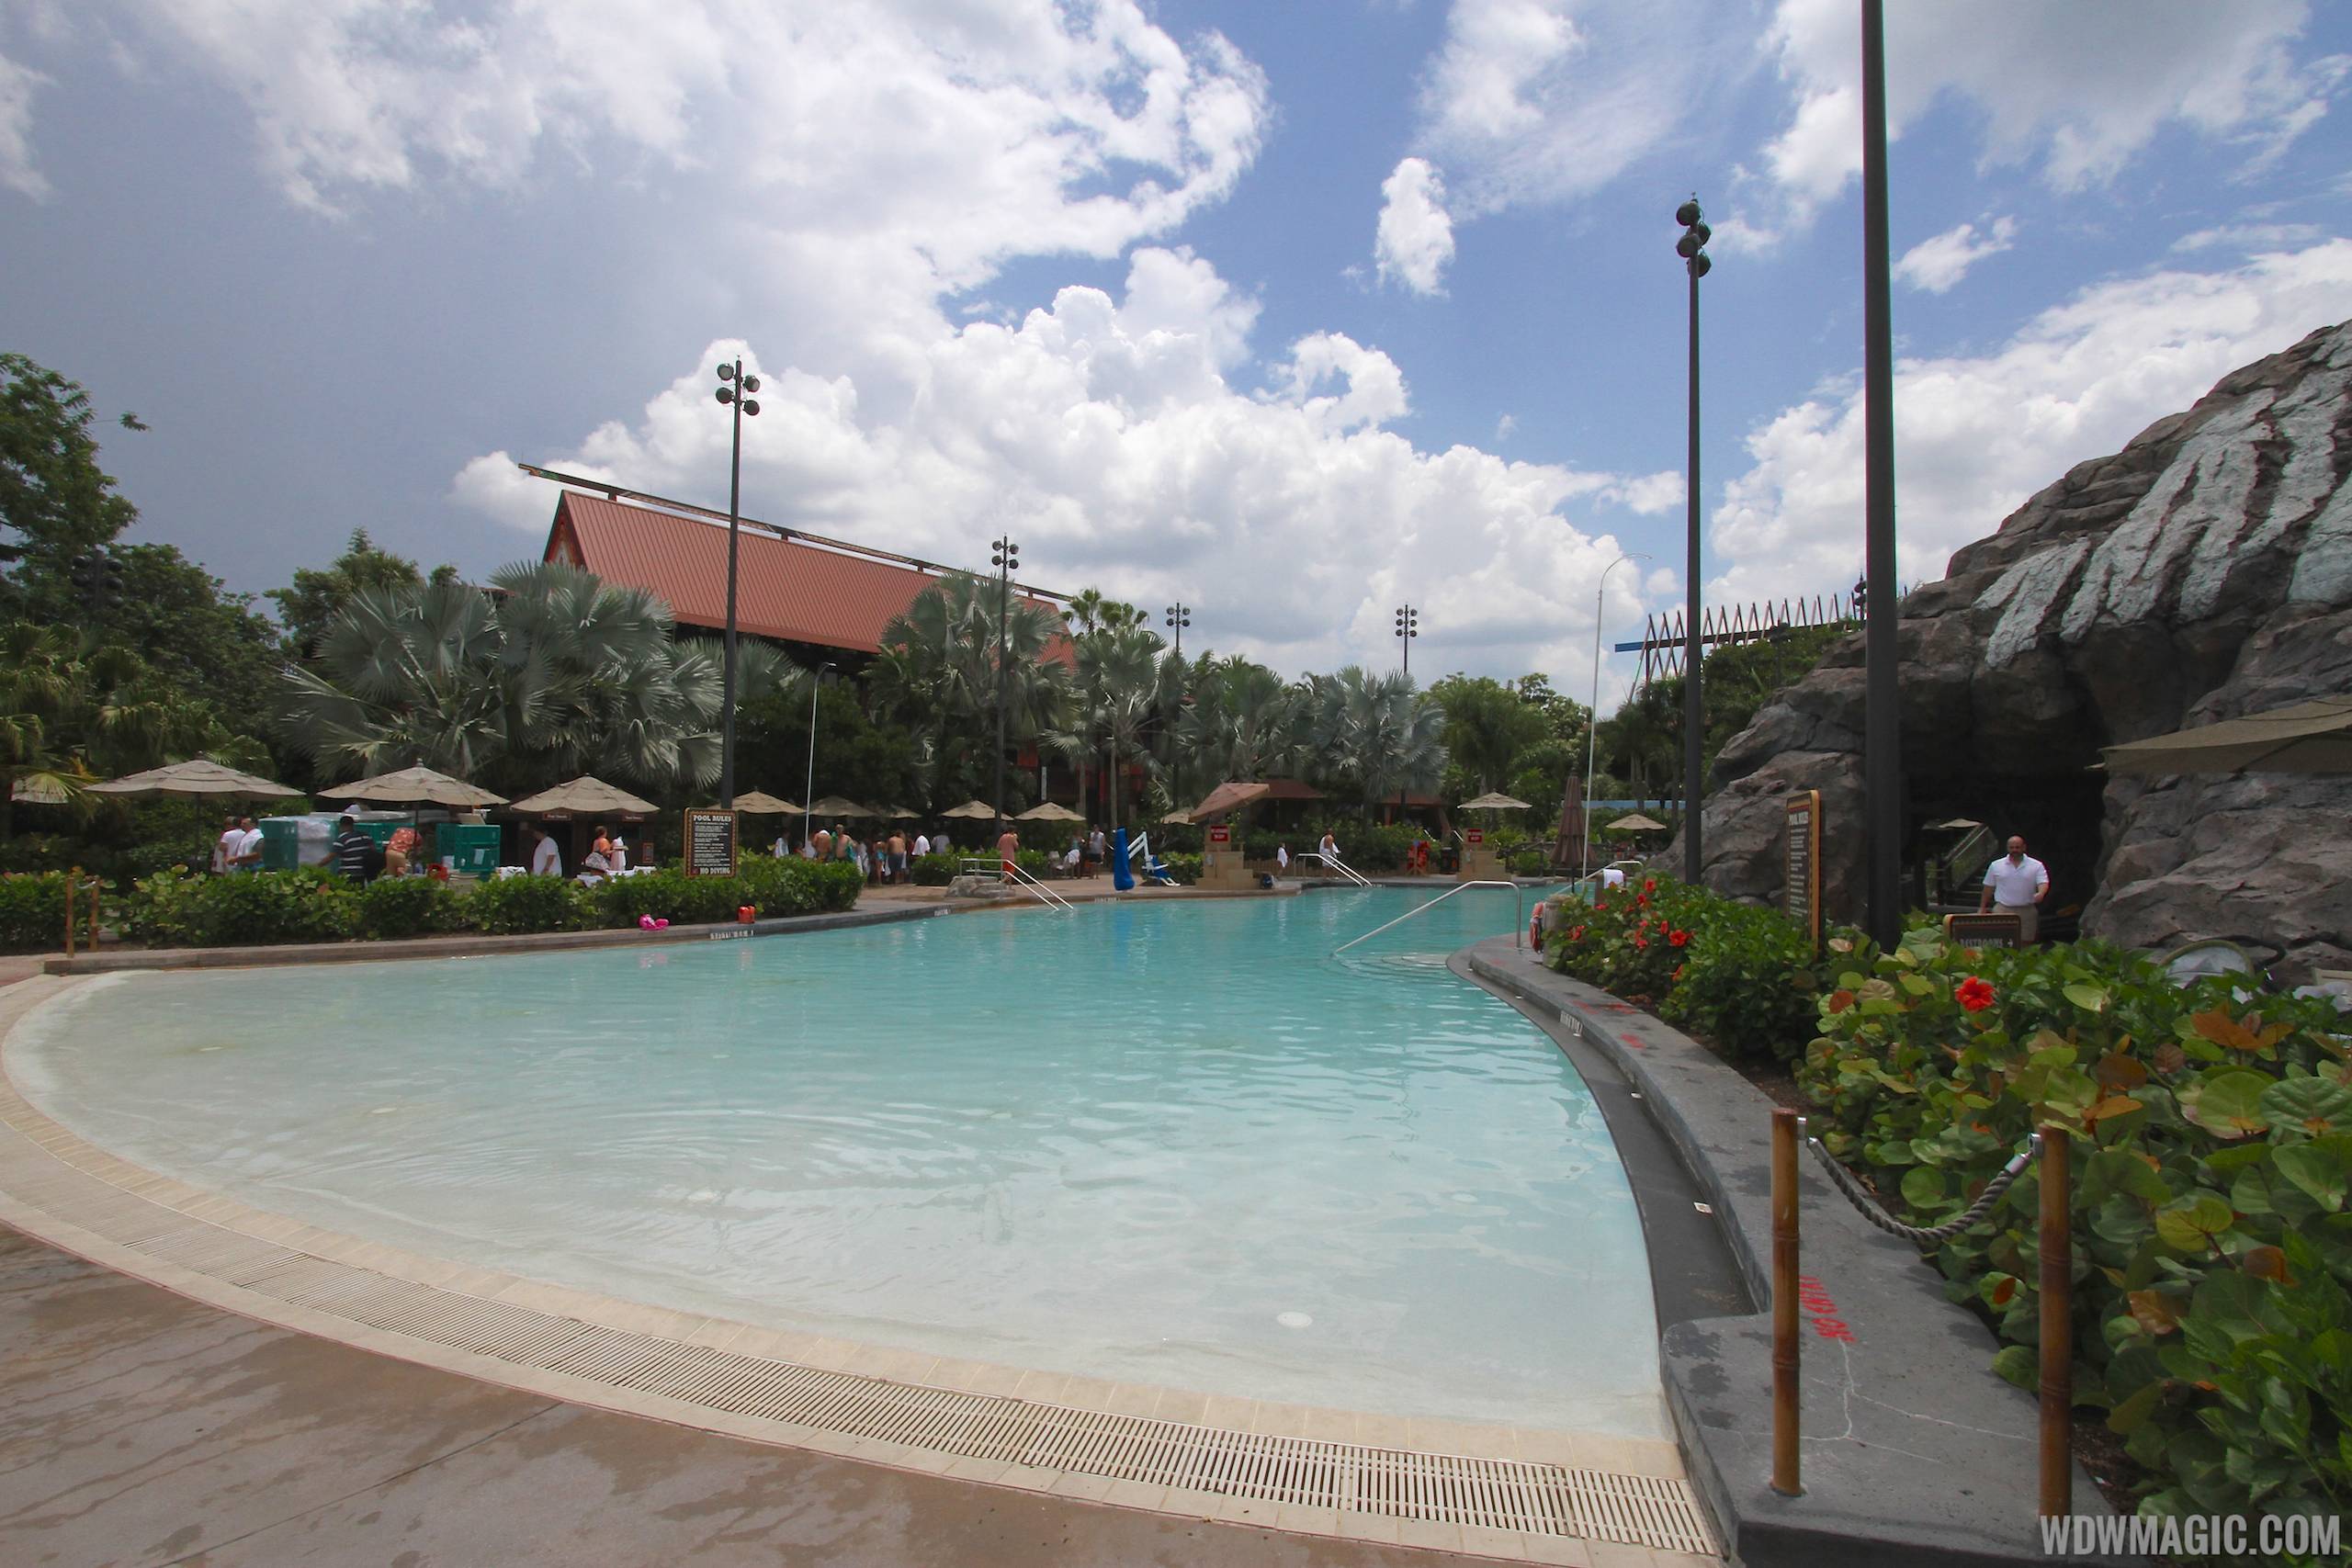 Pool area at Disney's Polynesian Resort before 2014 remodel